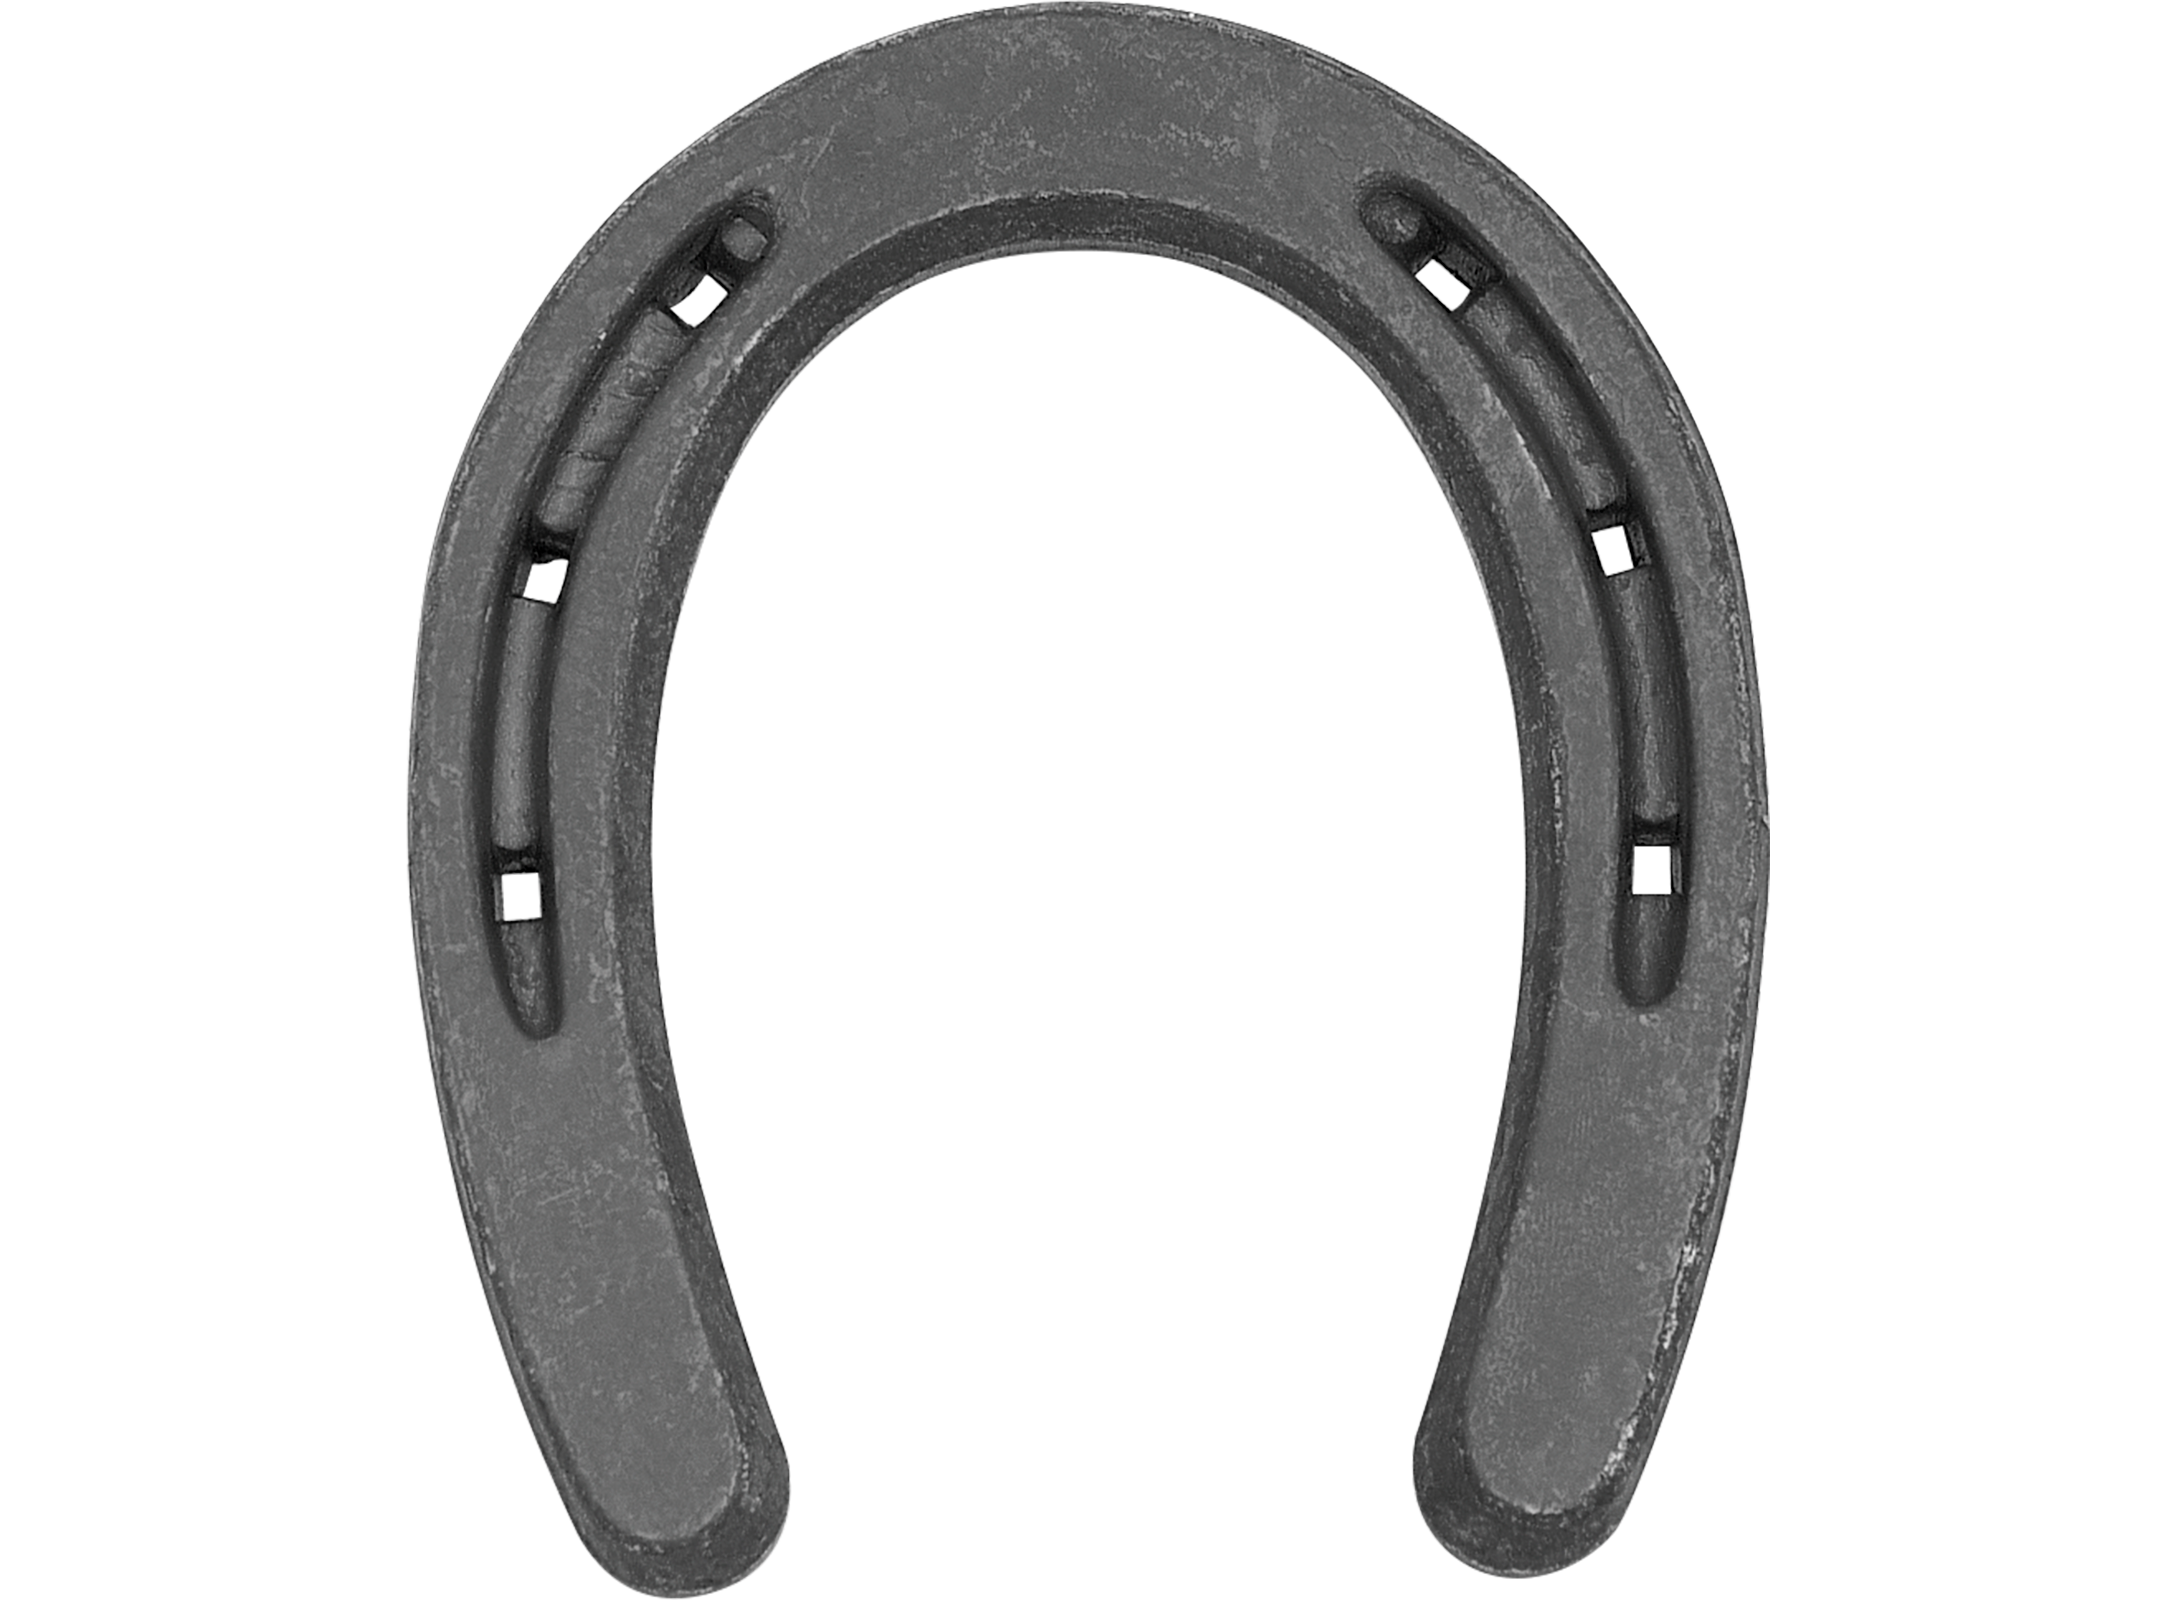 St. Croix Pony horseshoe, bottom side